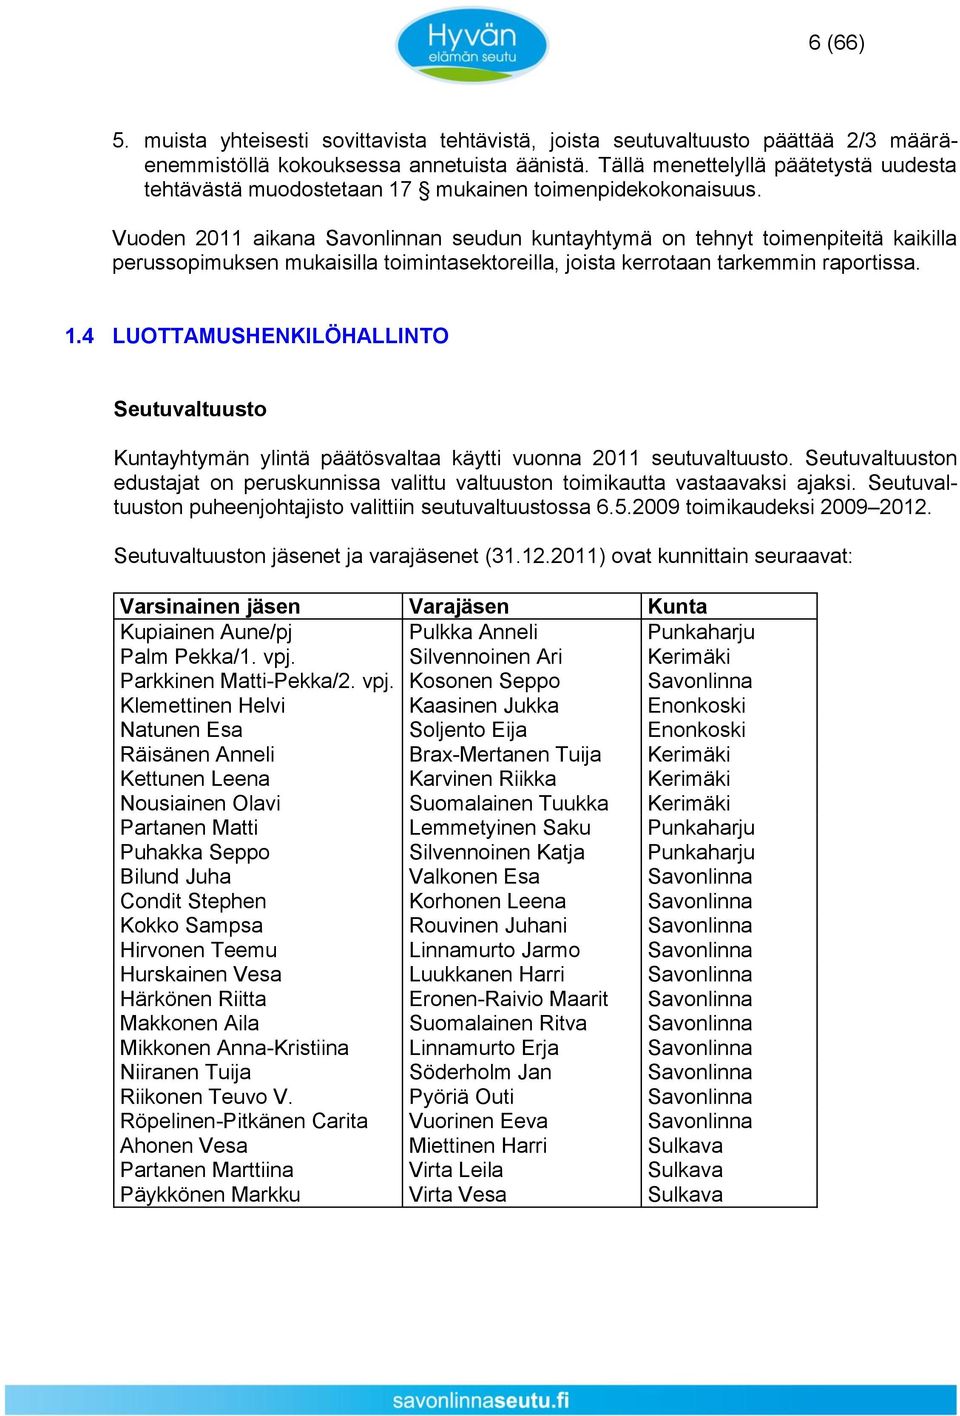 Vuoden 2011 aikana Savonlinnan seudun kuntayhtymä on tehnyt toimenpiteitä kaikilla perussopimuksen mukaisilla toimintasektoreilla, joista kerrotaan tarkemmin raportissa. 1.